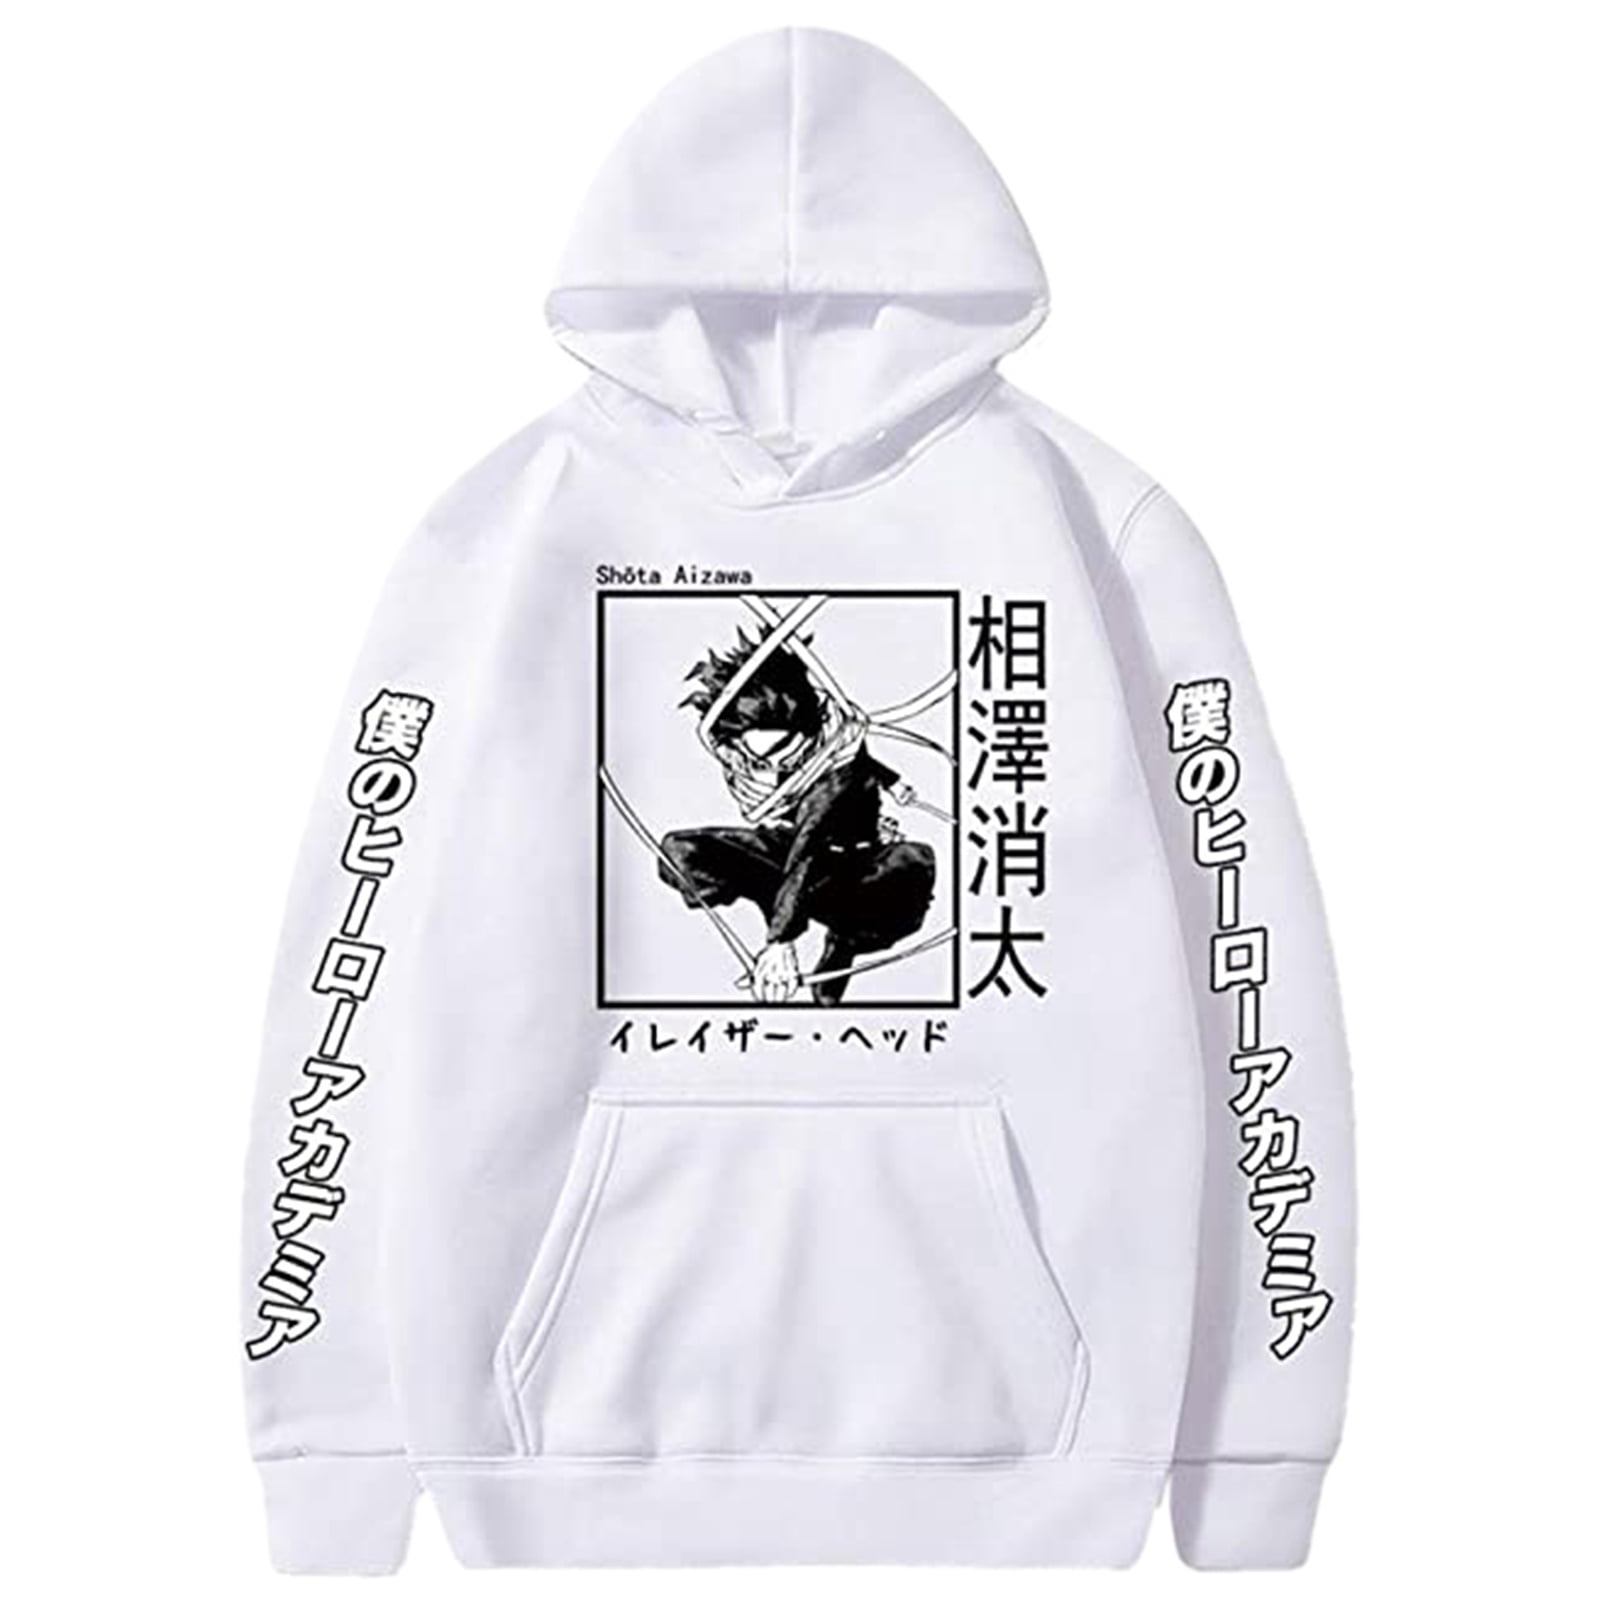 Hip-hop Anime Tokyo Ghoul Hoodie Cotton Hoody Short Sleeve Zip Sweatshirt Jacket